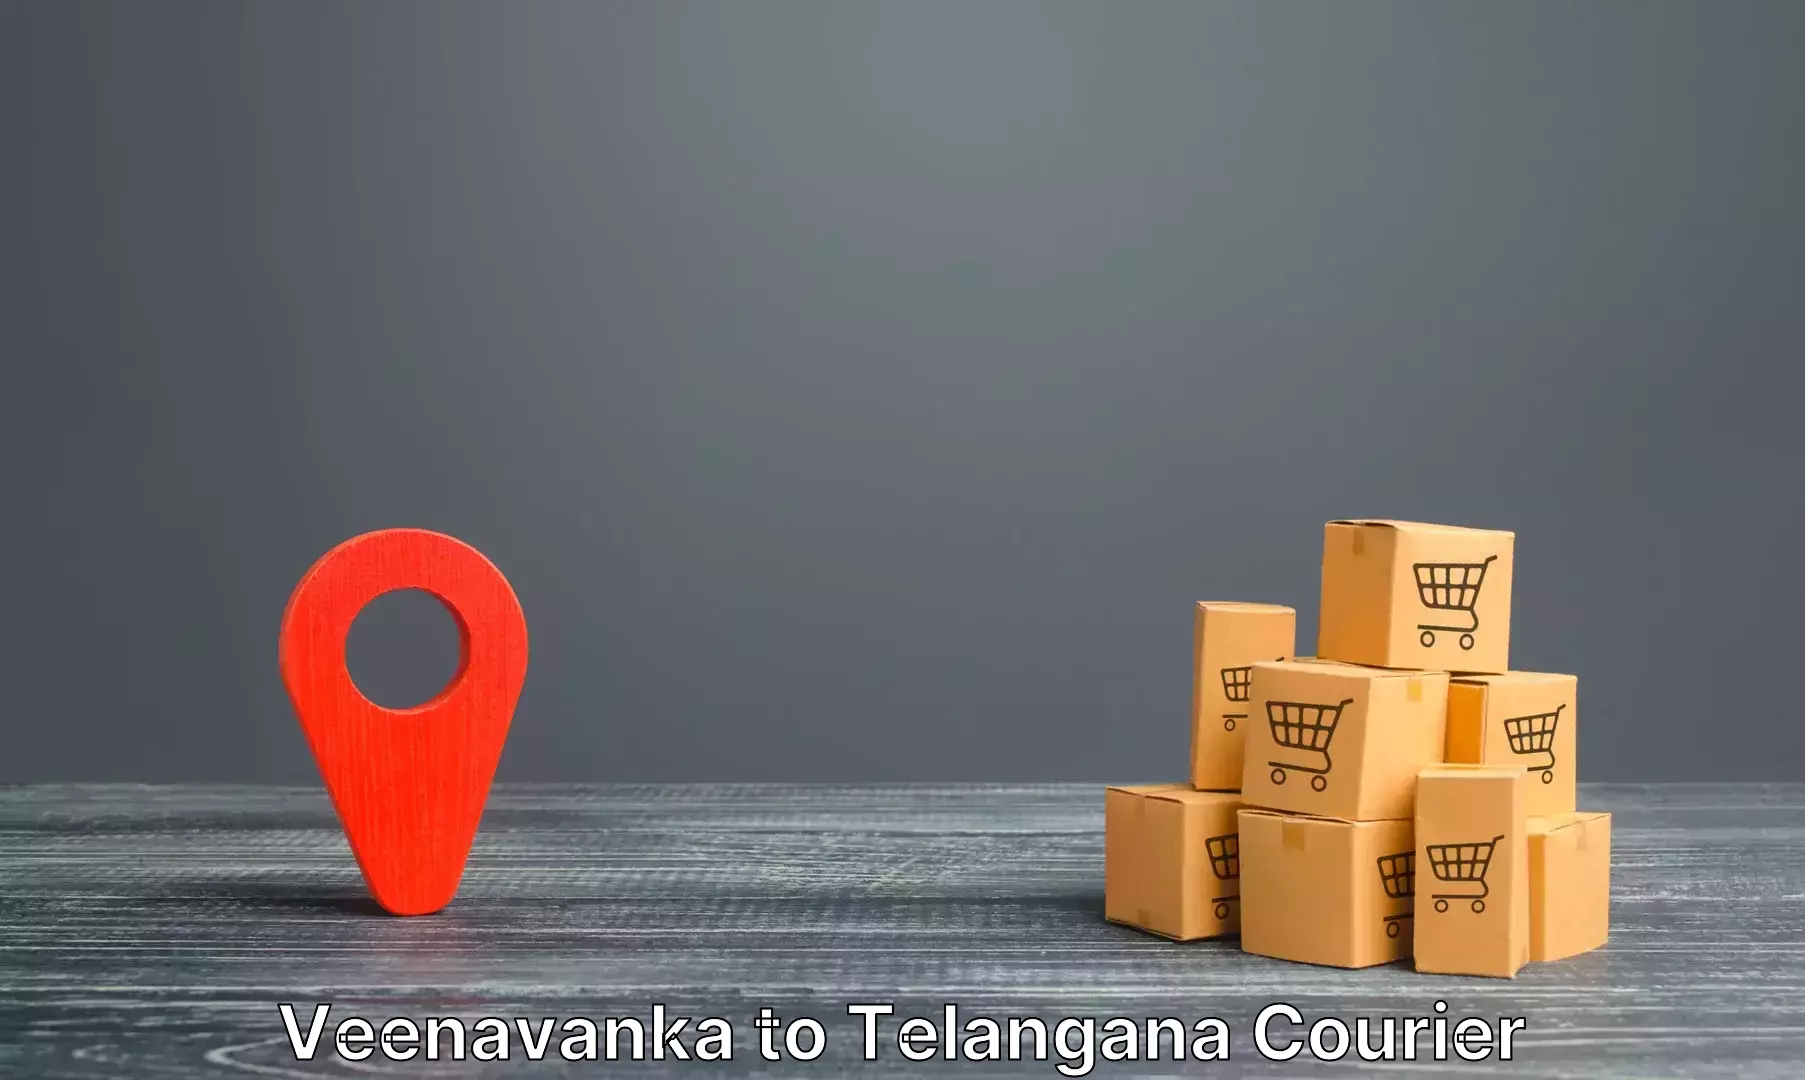 Baggage transport network Veenavanka to Rangareddy